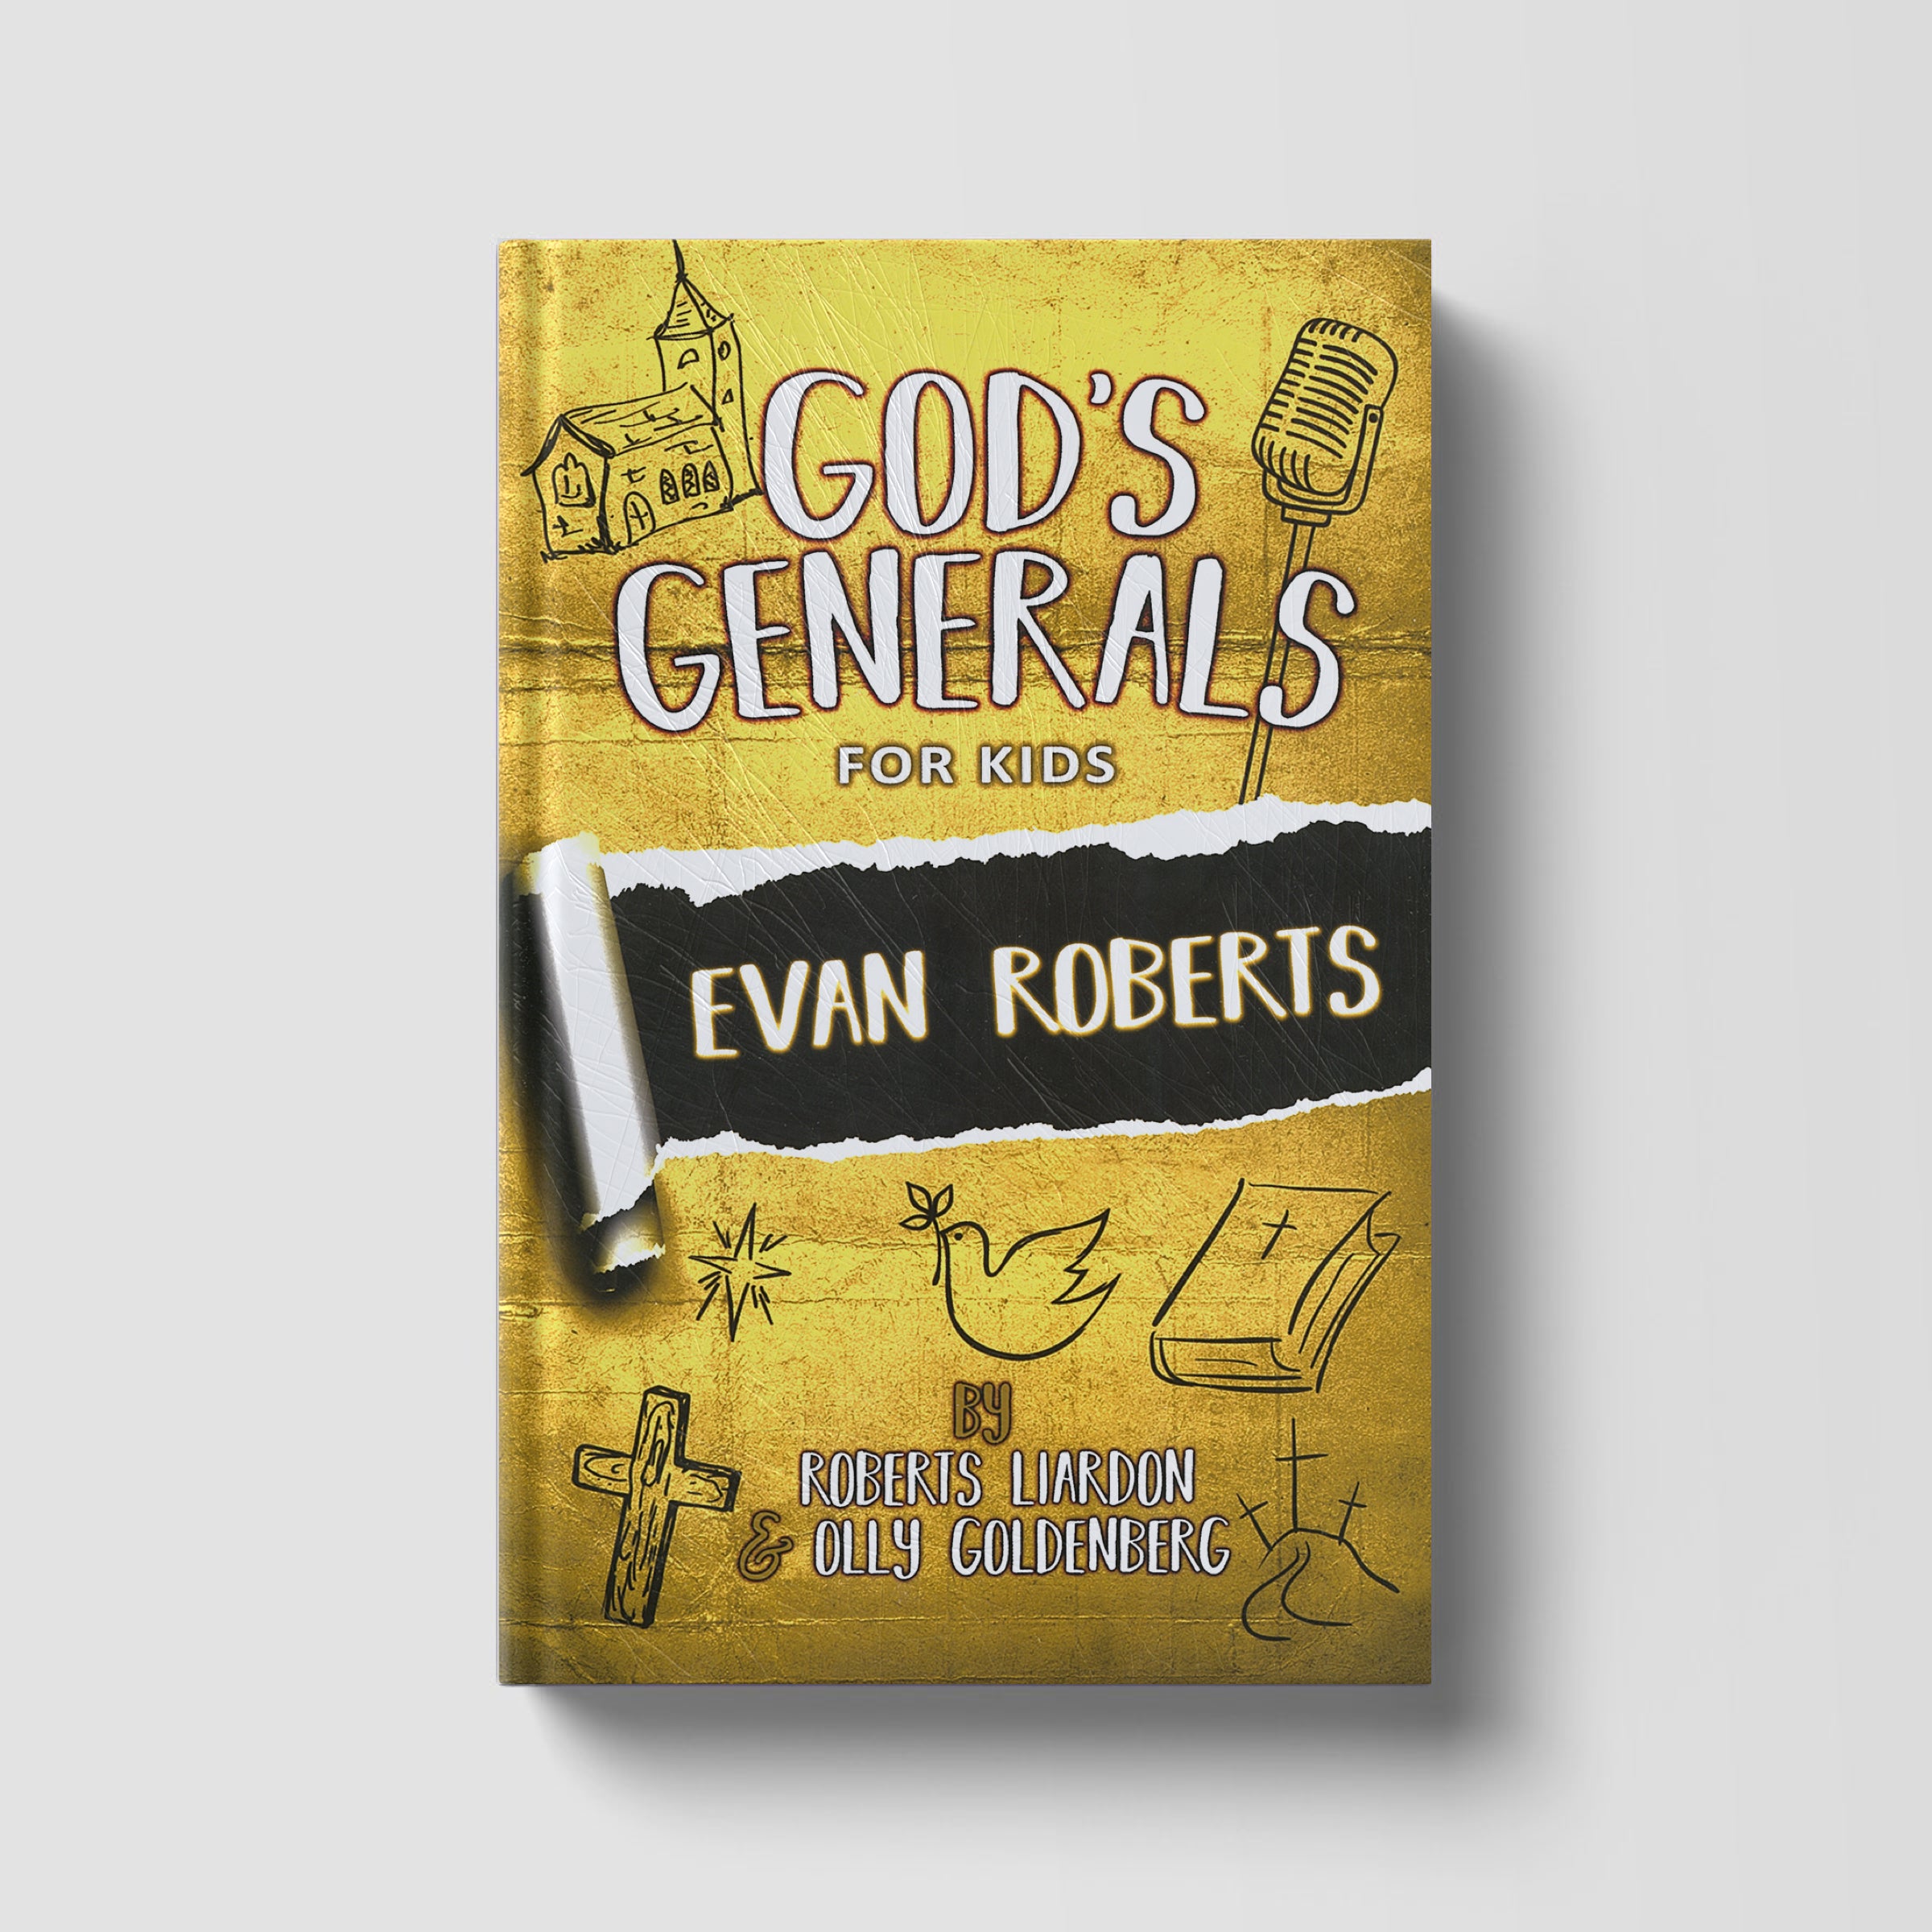 God's Generals For Kids: Evan Roberts Volume 5